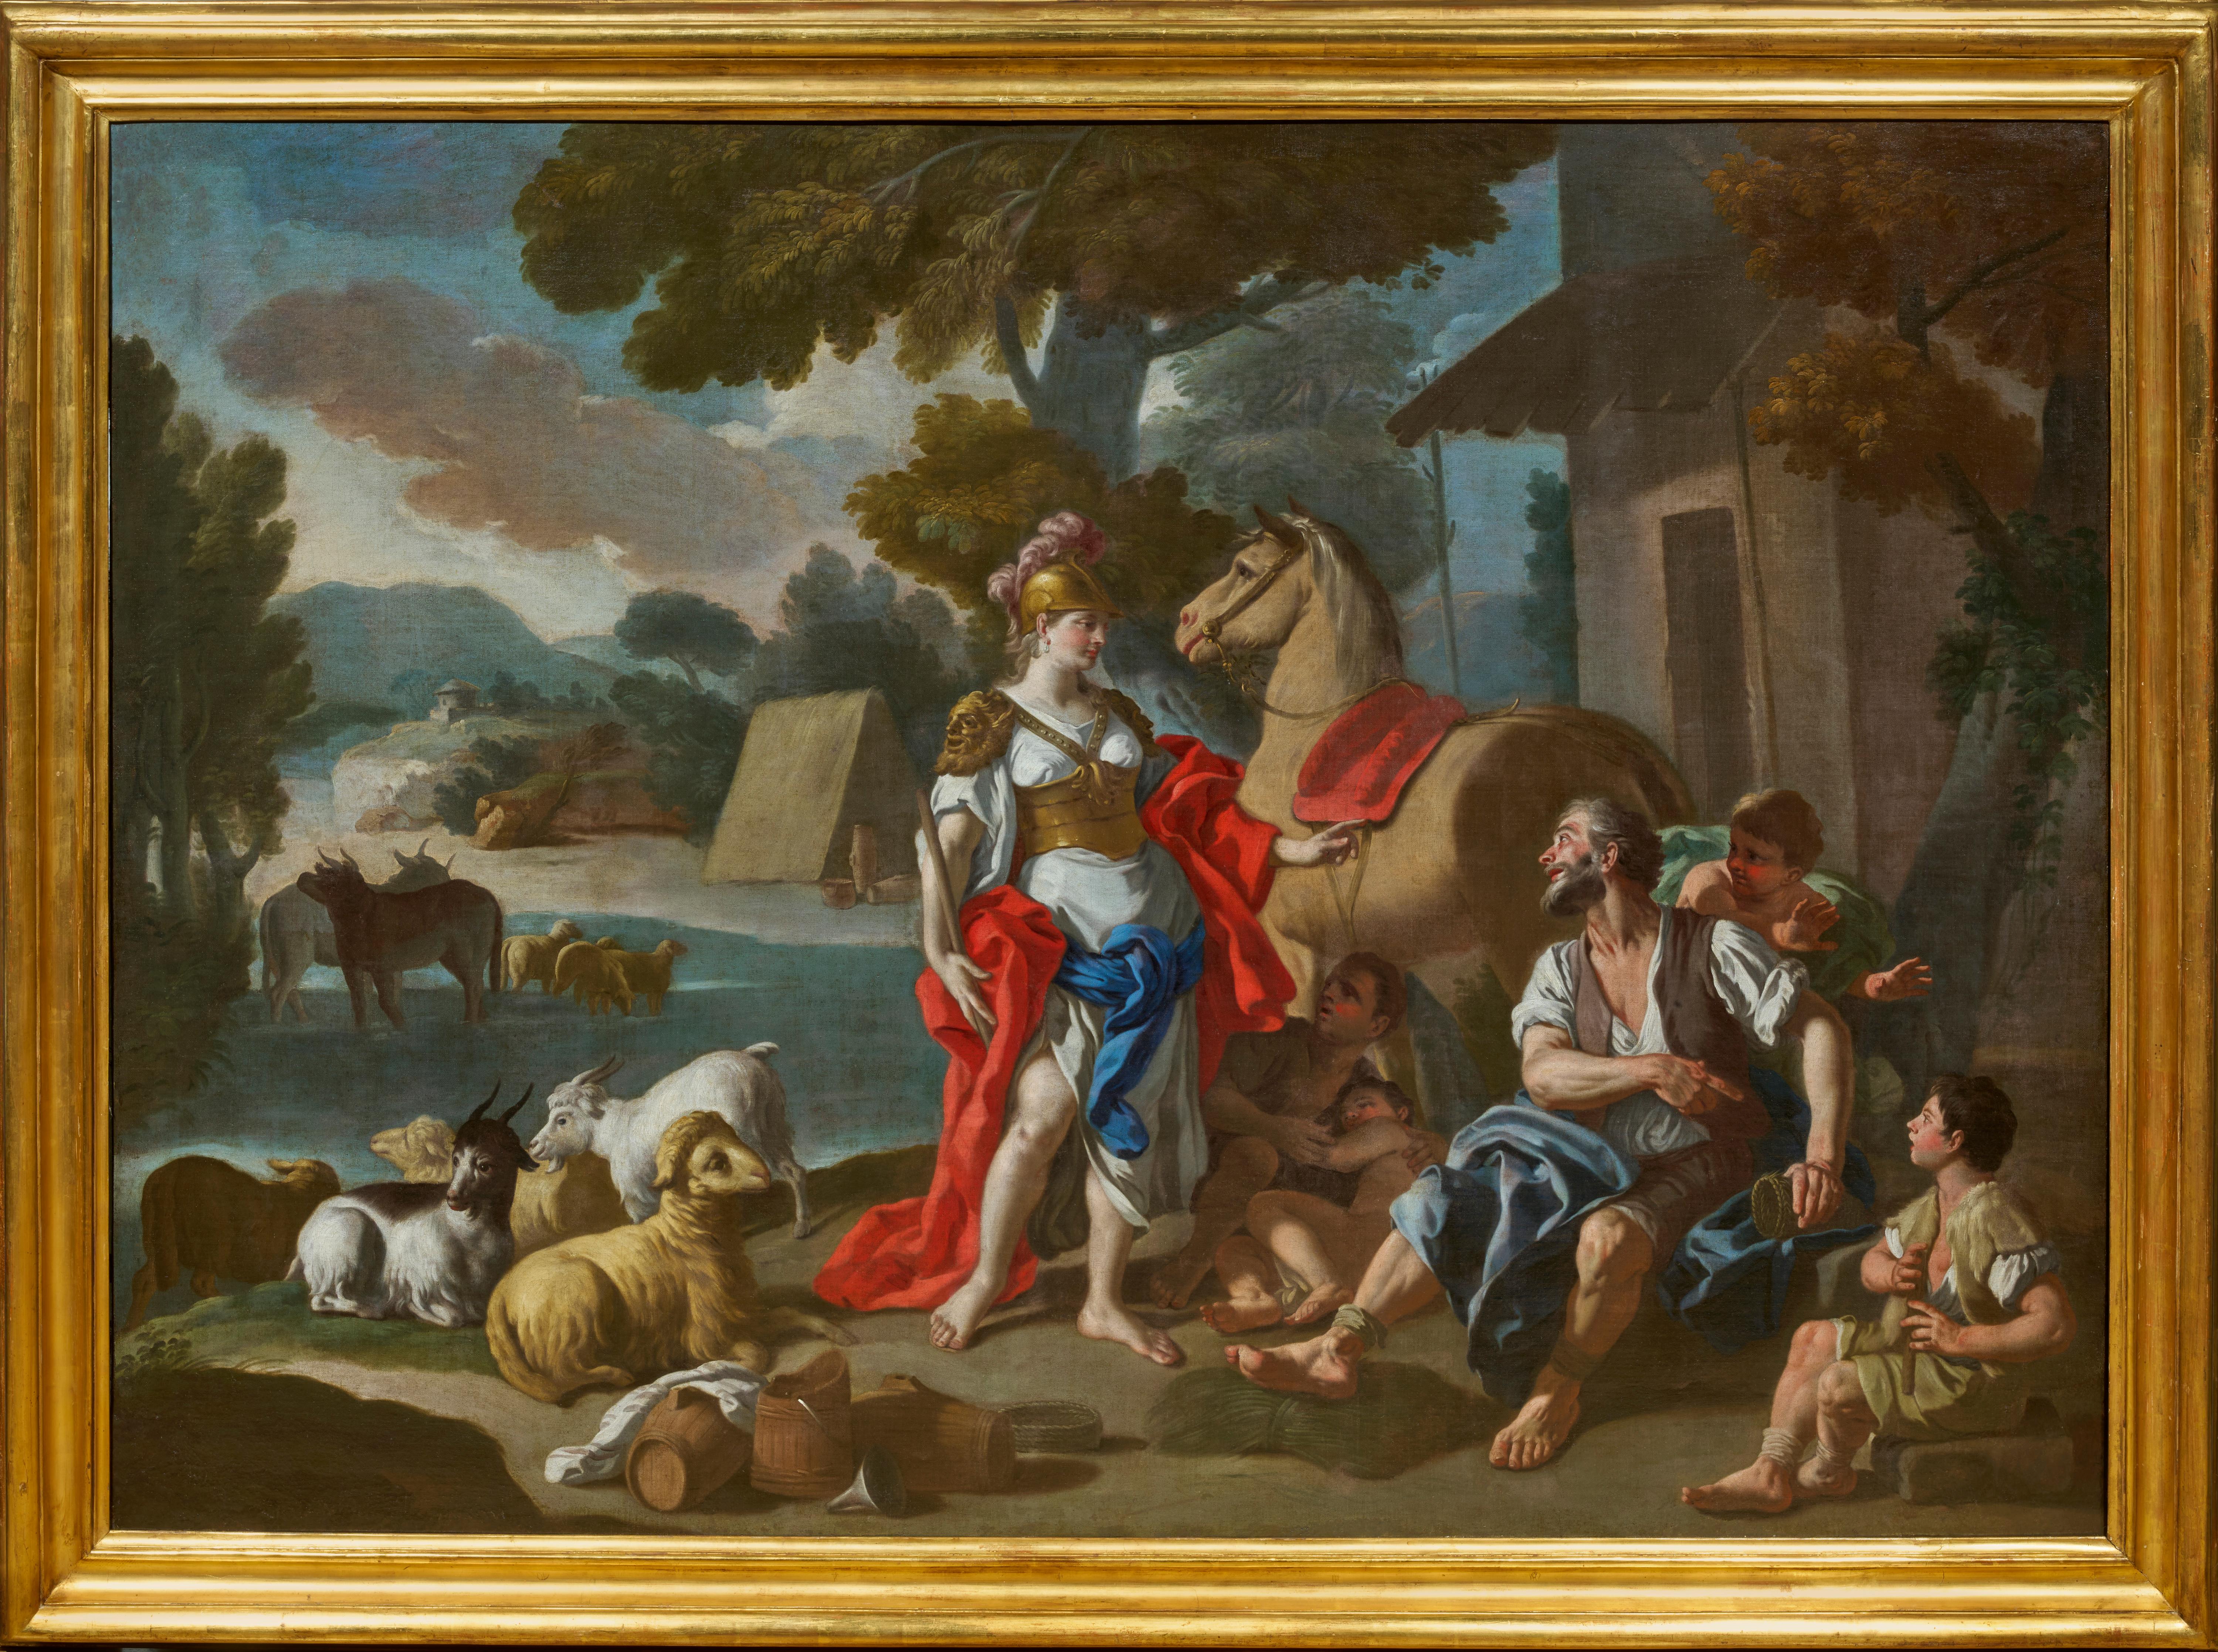 In diesem meisterhaften Gemälde stellt Francesco de Mura die Begegnung von Herminia und den Hirten dar, eine berühmte Episode aus dem siebten Gesang von Torquato Tassos Jerusalem Delivered. Der Künstler bietet uns eine Synthese der chromatischen